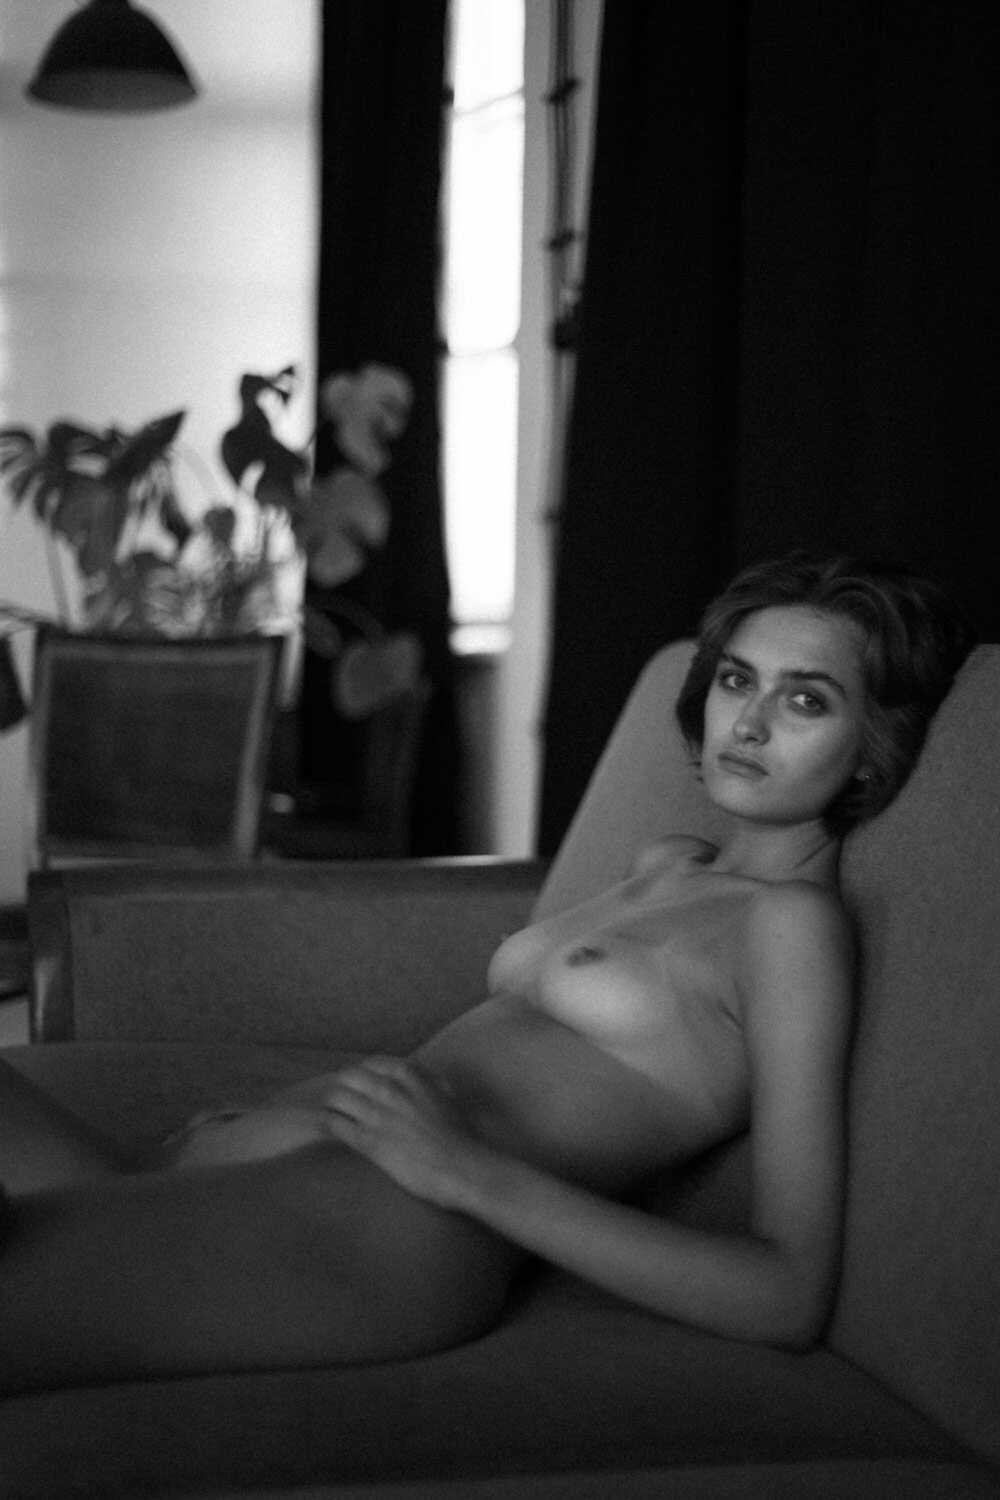 Το μοντέλο Wiktoria Kasprzak σε γυμνές φωτογραφίες